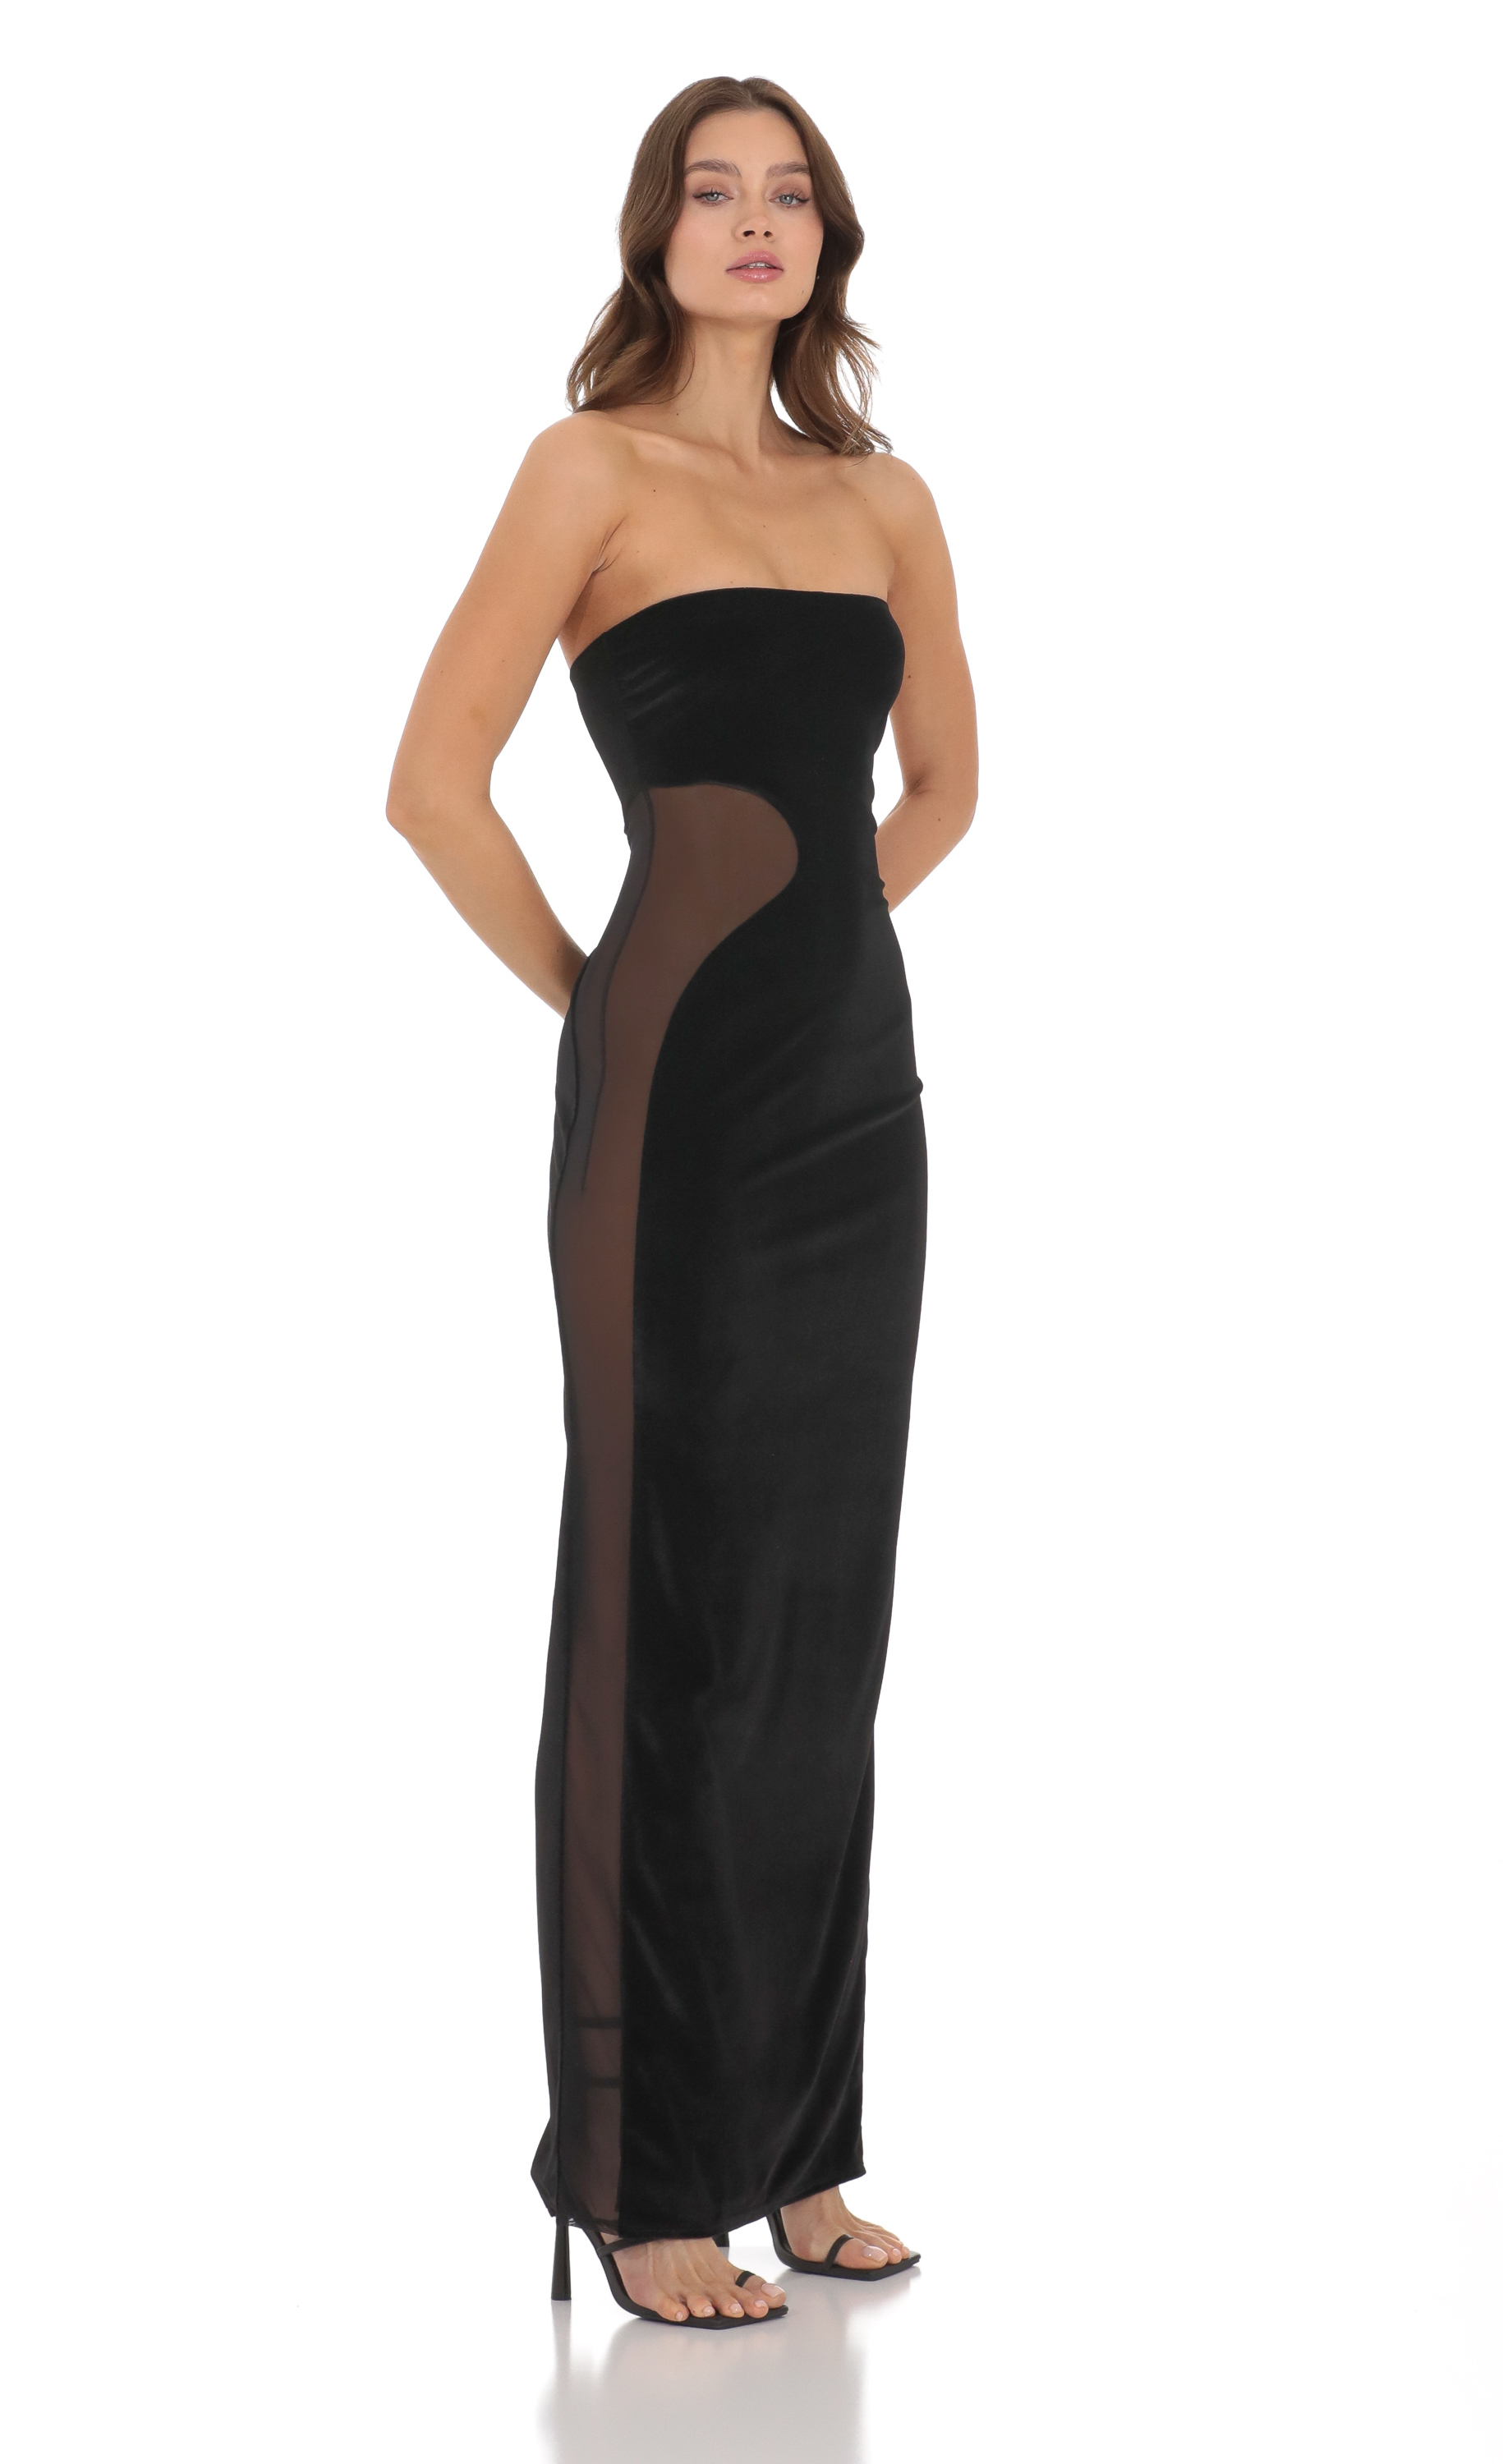 Velvet Mesh Cutout Strapless Dress in Black